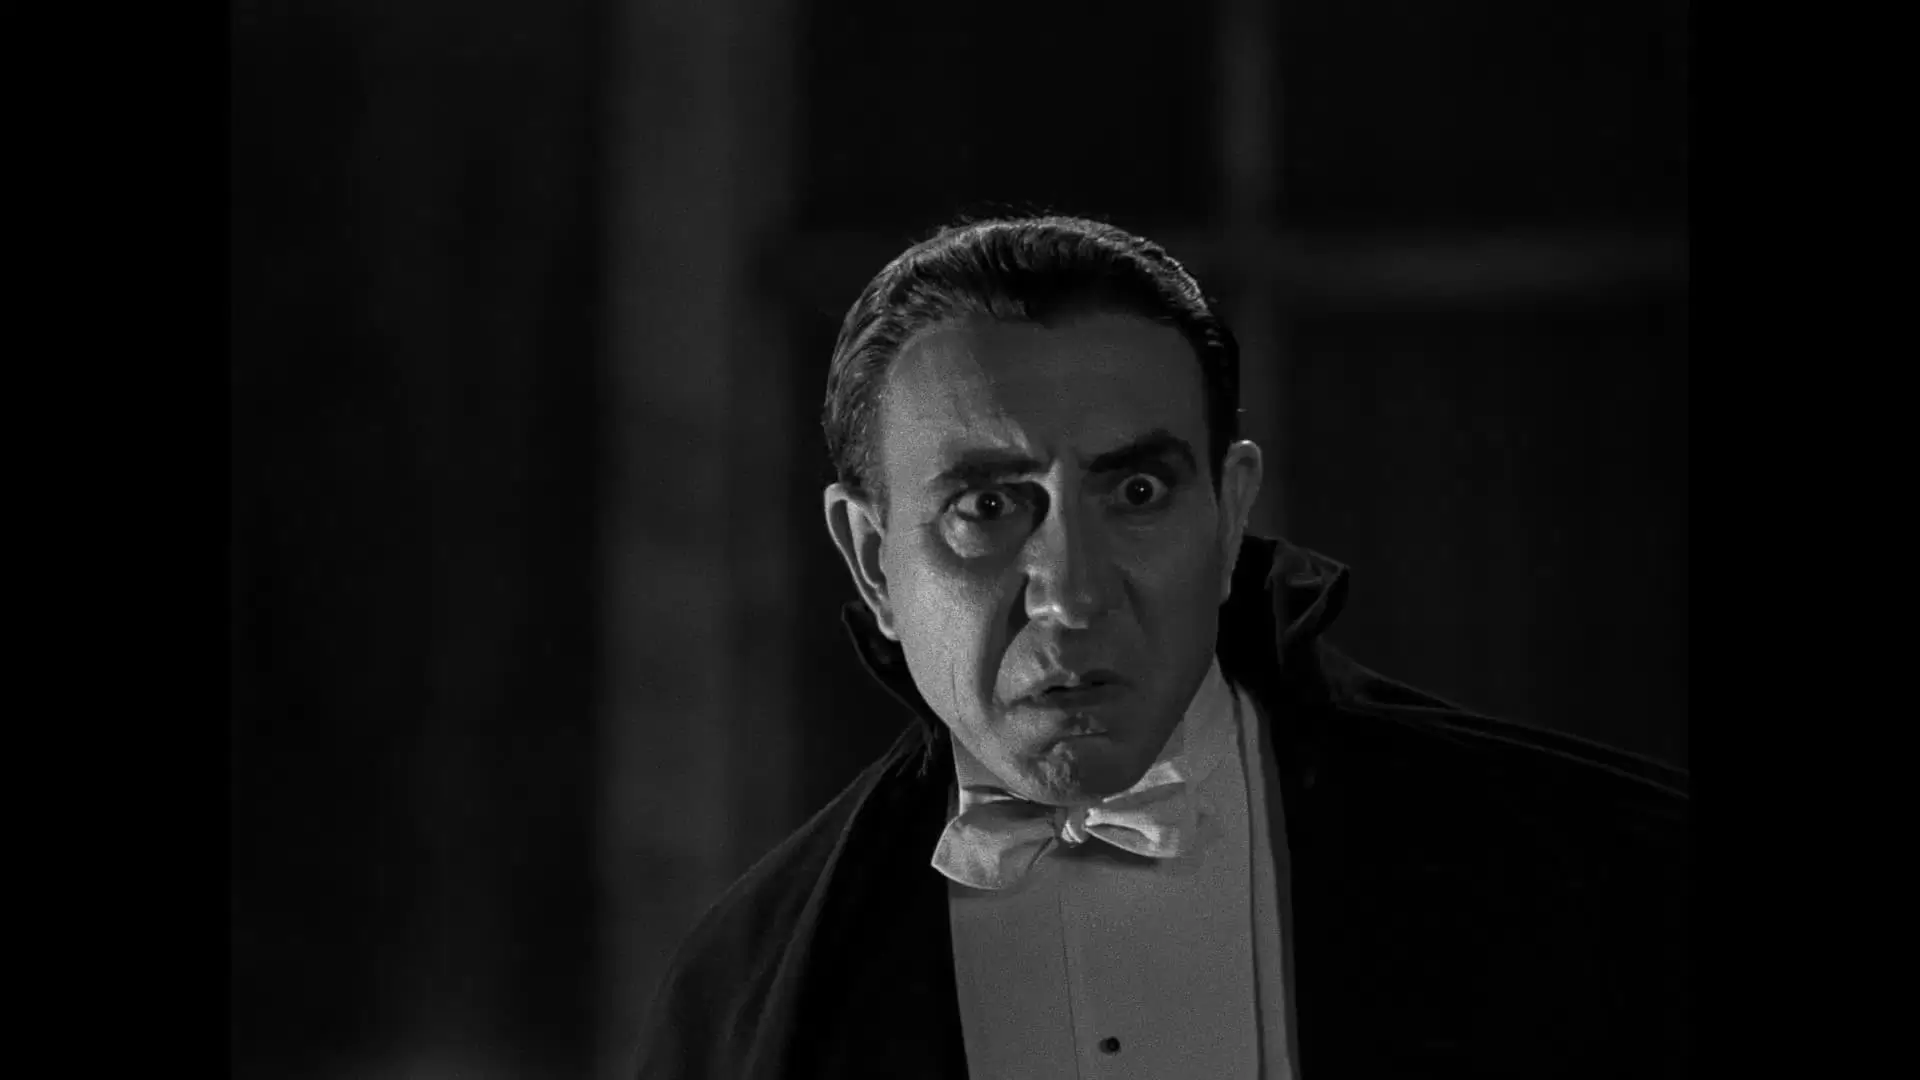 دانلود فیلم Dracula 1931 (دراکولا) با تماشای آنلاین